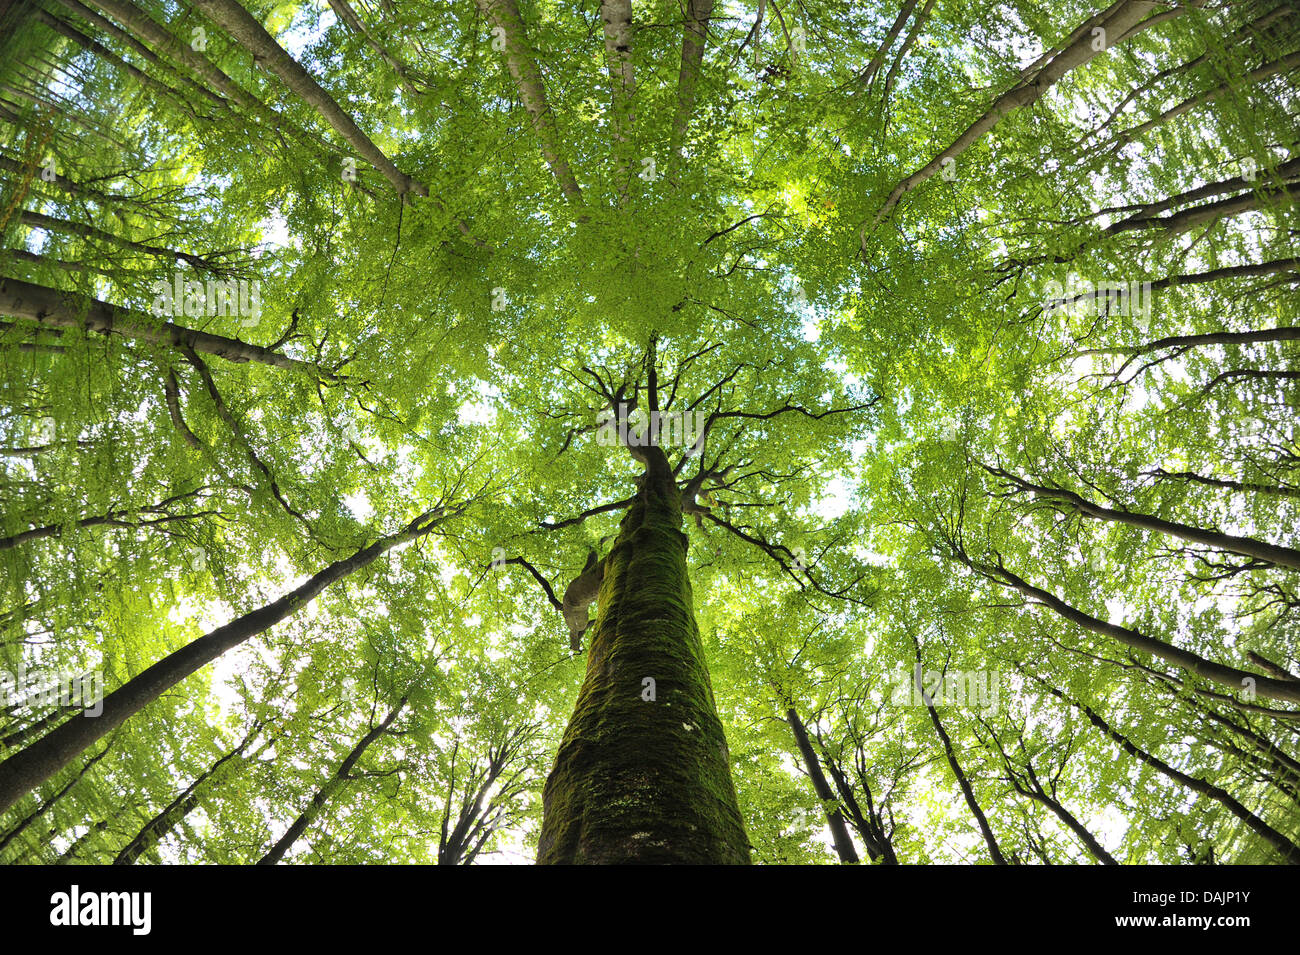 (Dossier) une archive photo datée du 04 septembre 2010 montre le hêtre commun dans les arbres du Parc Naturel Steigerwald, près de l'Allemagne. Ebrach Un différend sur les plans d'un parc national Steigerwald a fait rage pendant des années. Une chose est incontestable : hêtre du Steigerwald paysage est une rareté dans le monde entier. Greenpeace tient à protéger les forêts de hêtre commun en Allemagne par la création de dix nouveaux parcs nationaux Banque D'Images